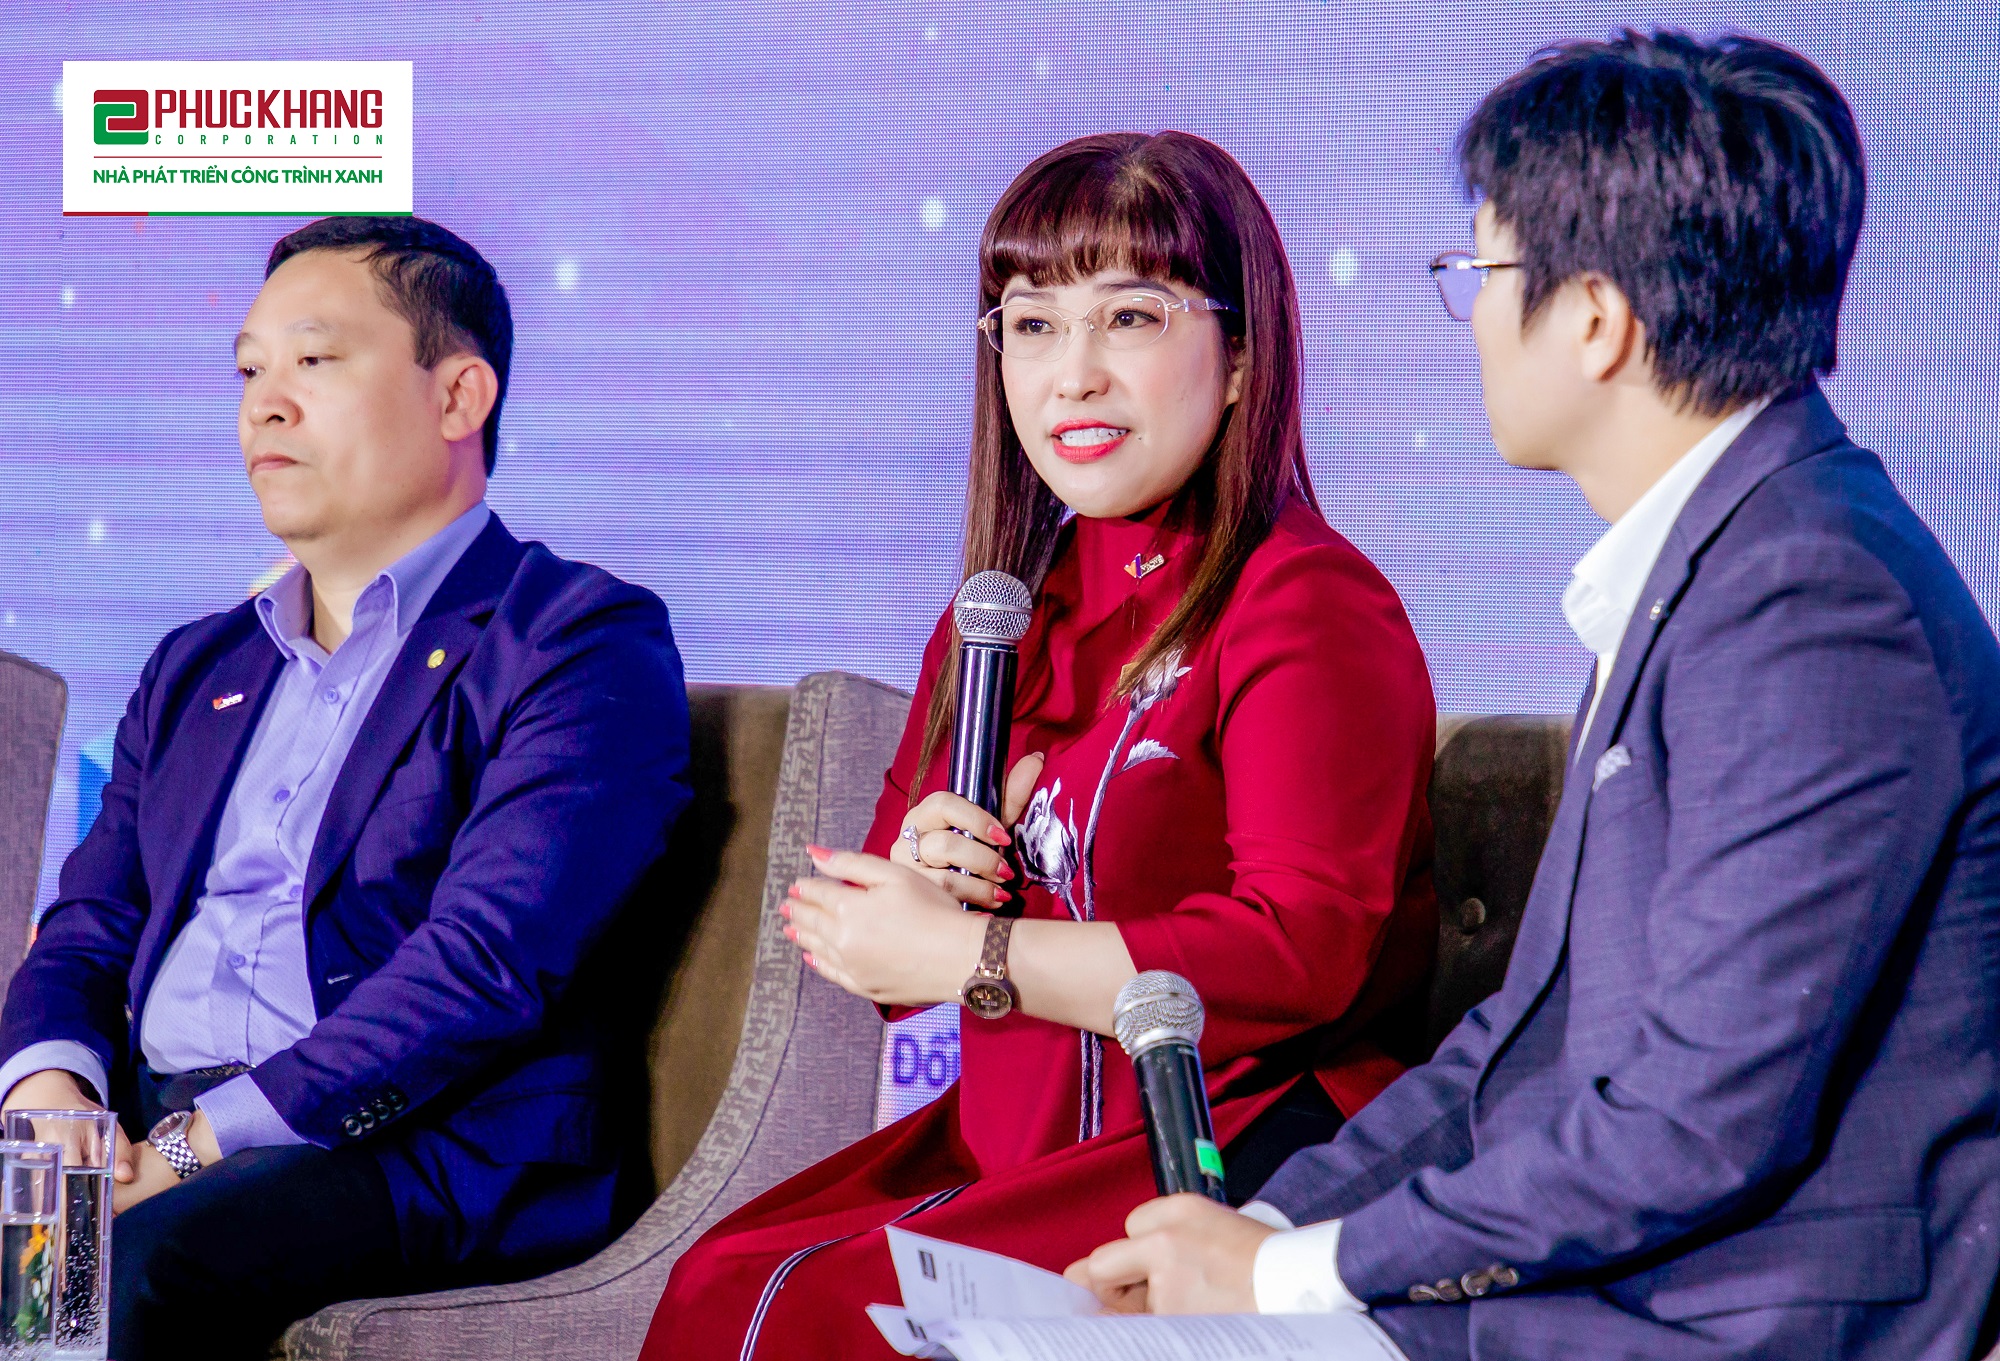 CEO Lưu Thị Thanh Mẫu chia sẻ câu chuyện thực tế về xây dựng lực lượng lao động bền vững tại Phuc Khang Corporation